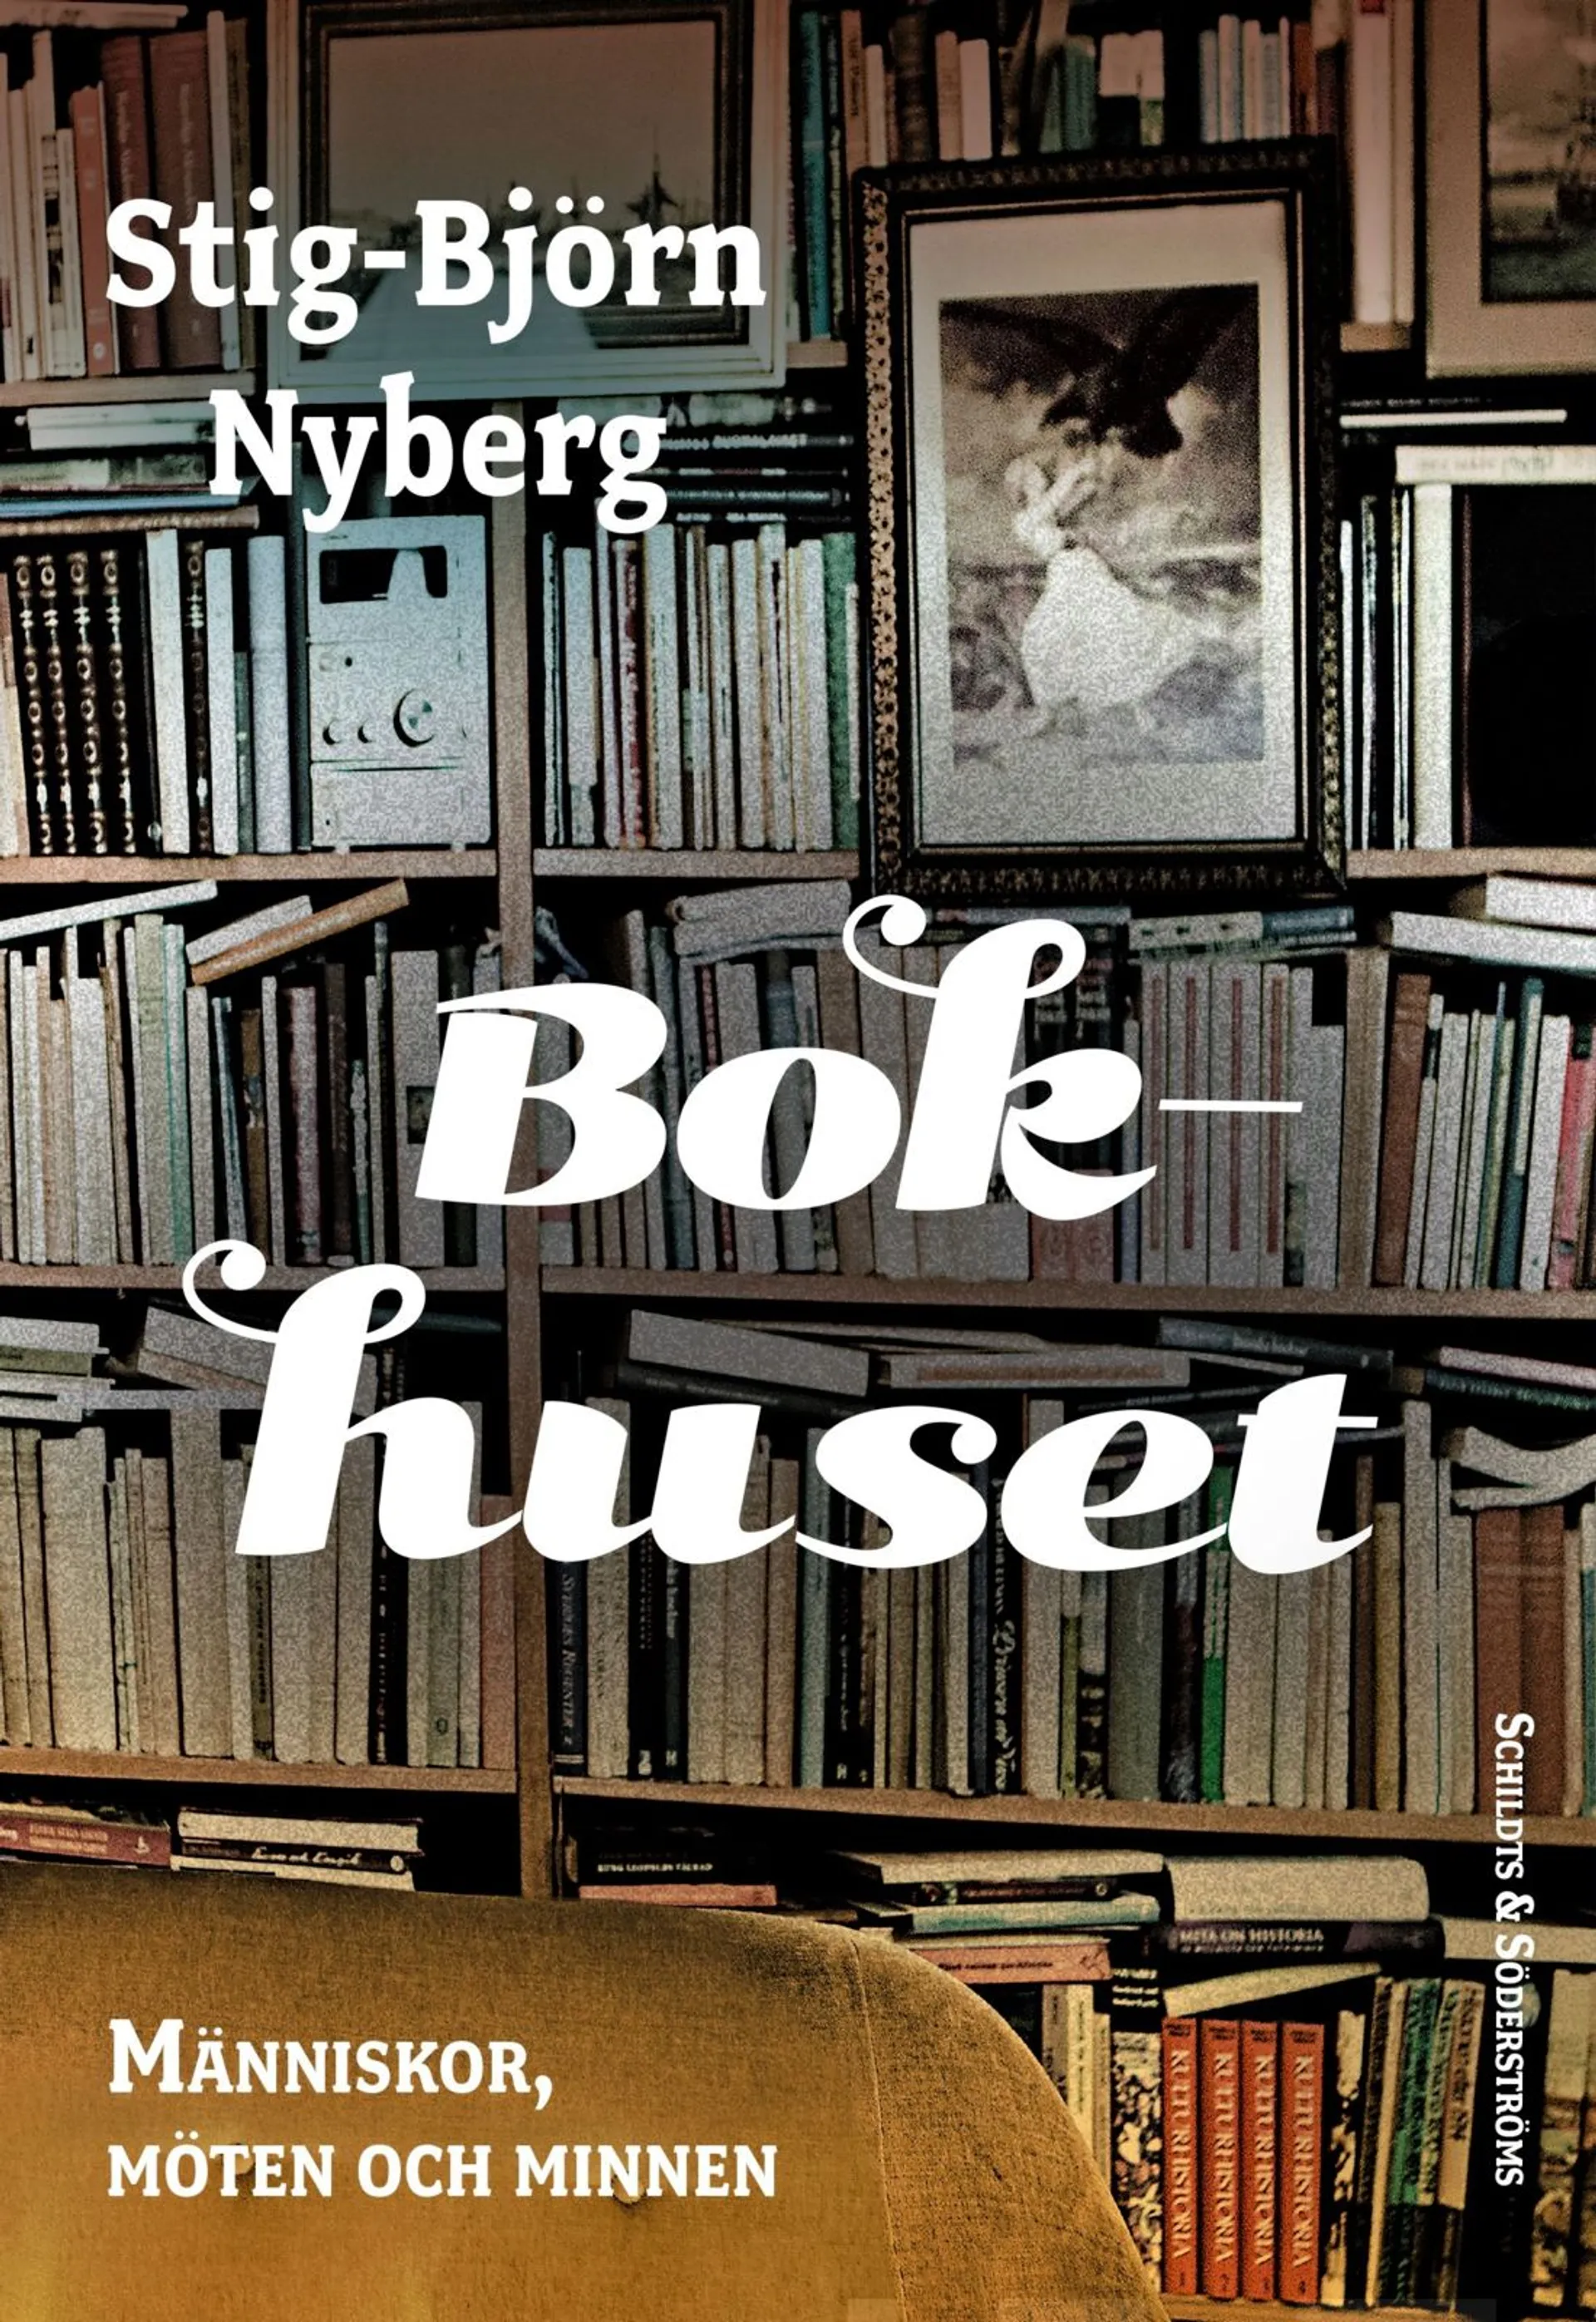 Nyberg, Bokhuset